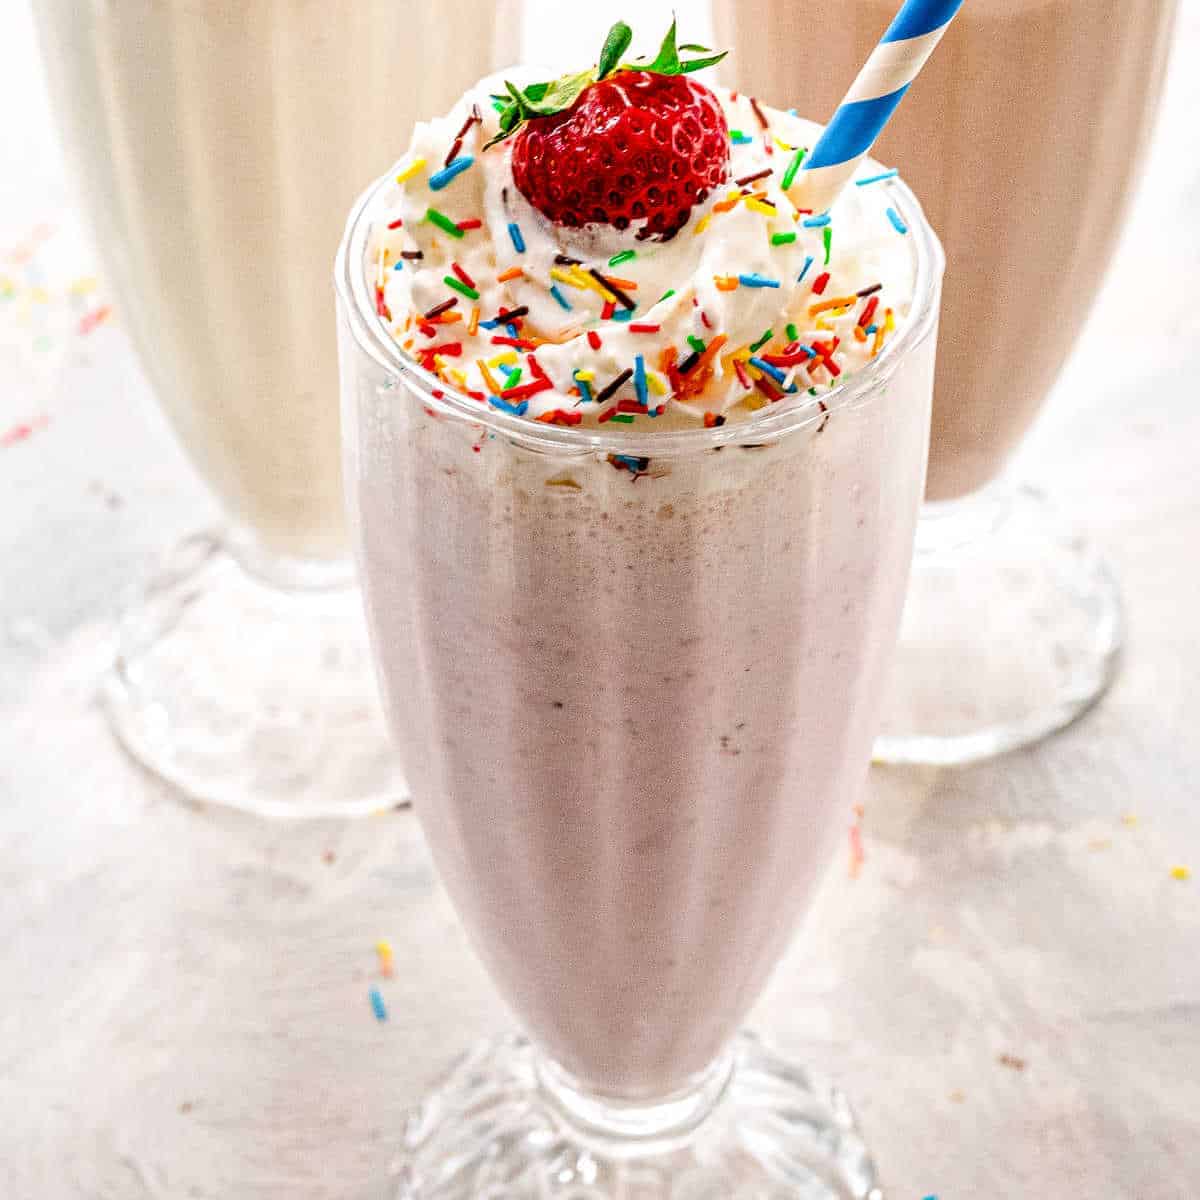 How to make milkshake in a blender – 3 easy recipes